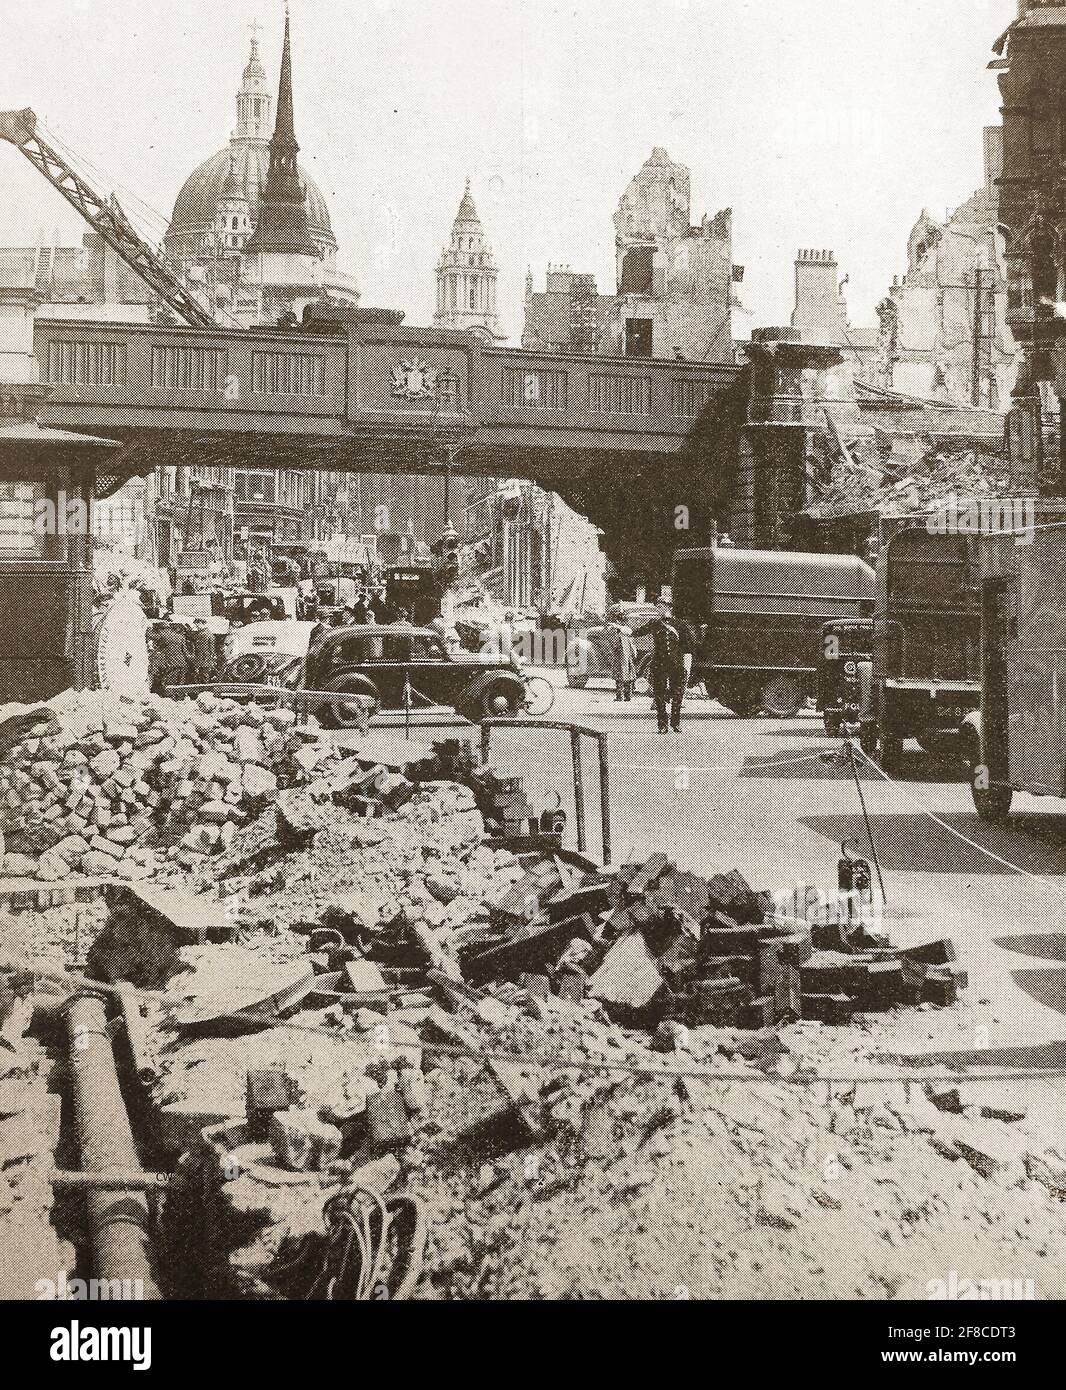 1940 il blitz - immagine del giornale - guardando su Ludgate Hill, Londra verso la Cattedrale di St Paul la mattina dopo un'incursione aerea da parte dei bombardieri tedeschi. Foto Stock